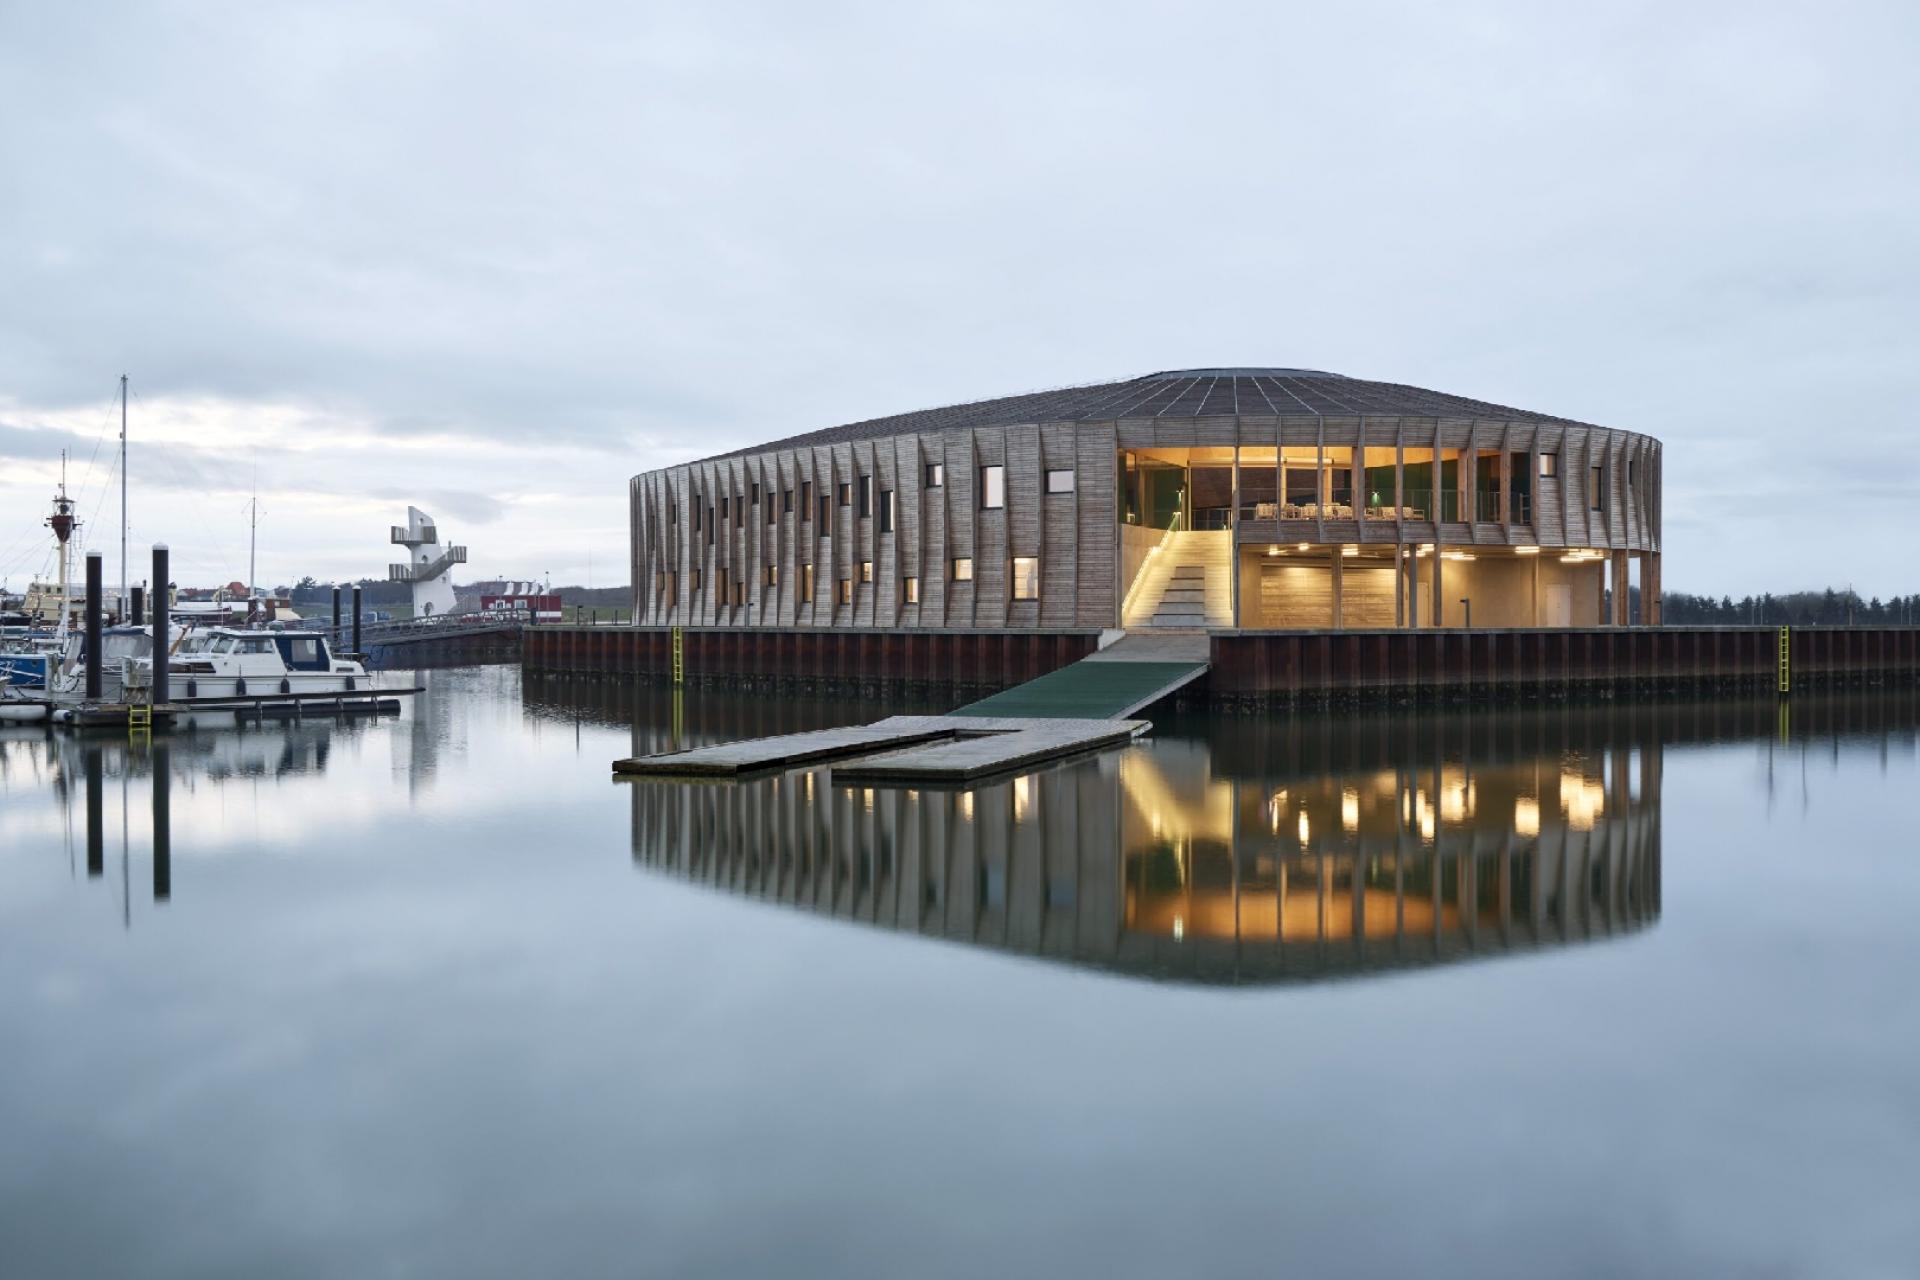 Det flere gange prisvindende Maritimt Center vil sammen med vandsportsmekkaet Aqtiv blive en del af den nye bydel, som kommunen gerne ser spire frem på Esbjerg Havn. Arkivfoto: wichmann+bendtsen